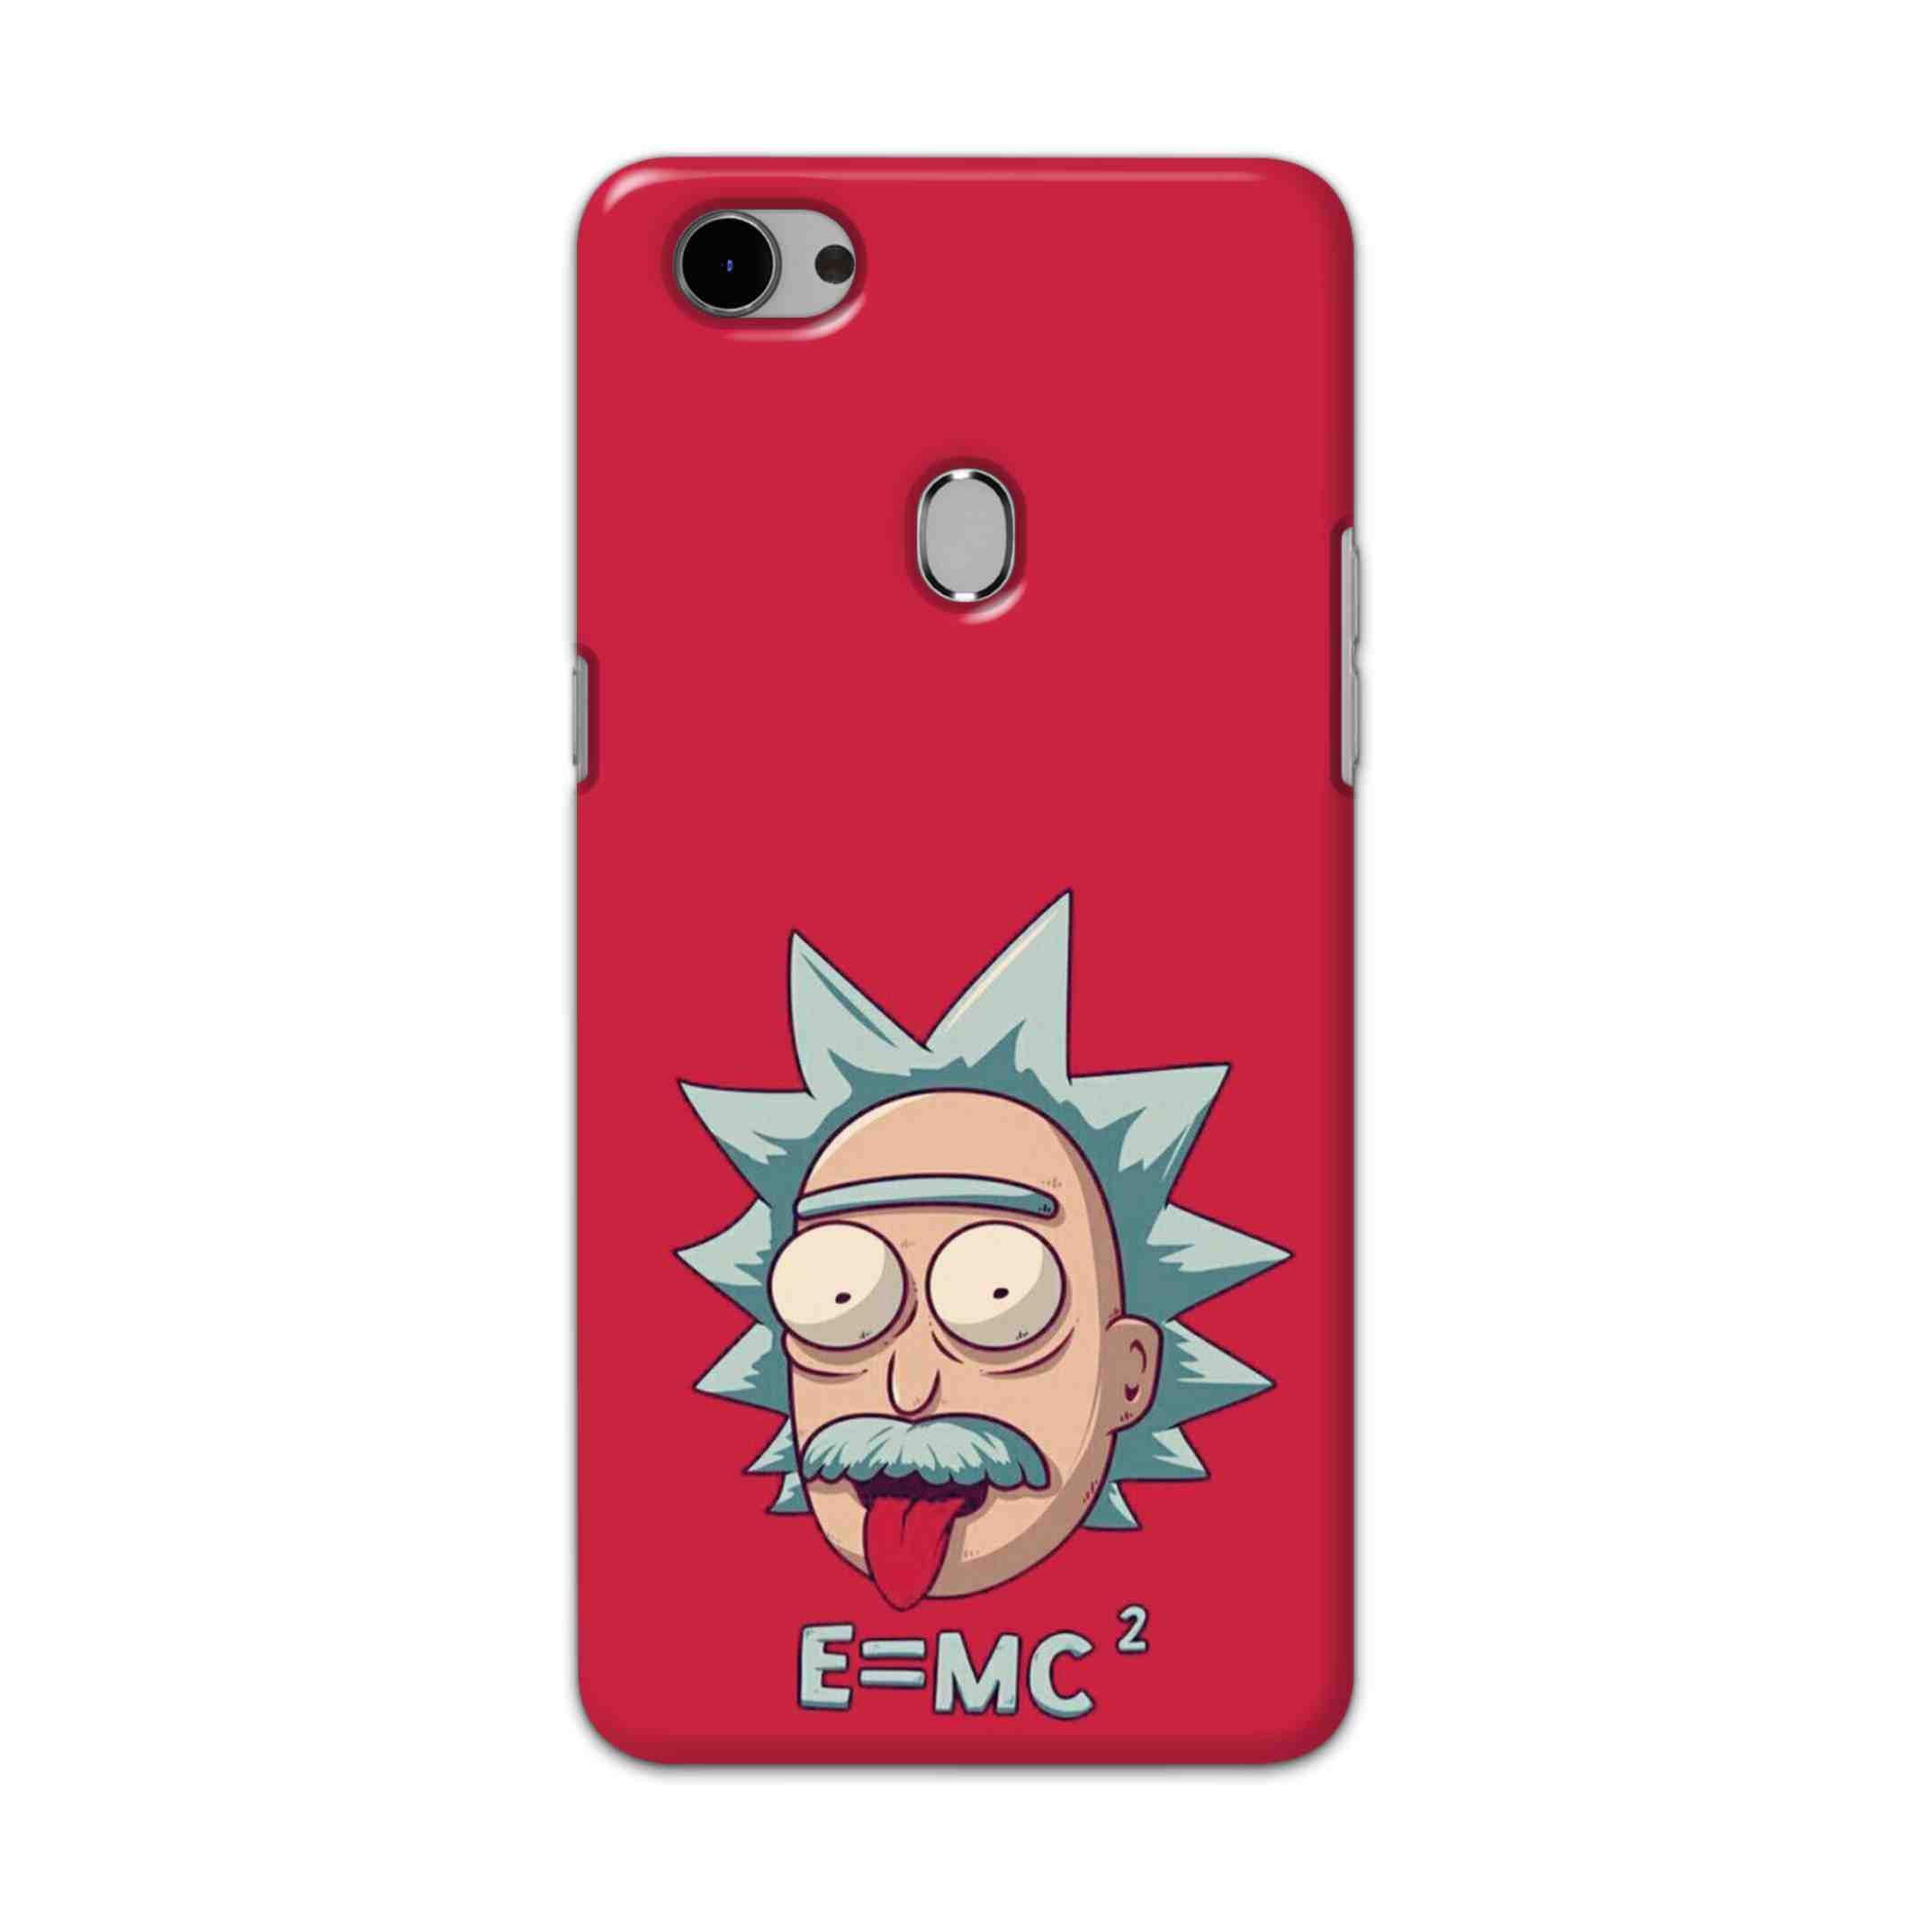 Buy E=Mc Hard Back Mobile Phone Case Cover For Oppo F7 Online